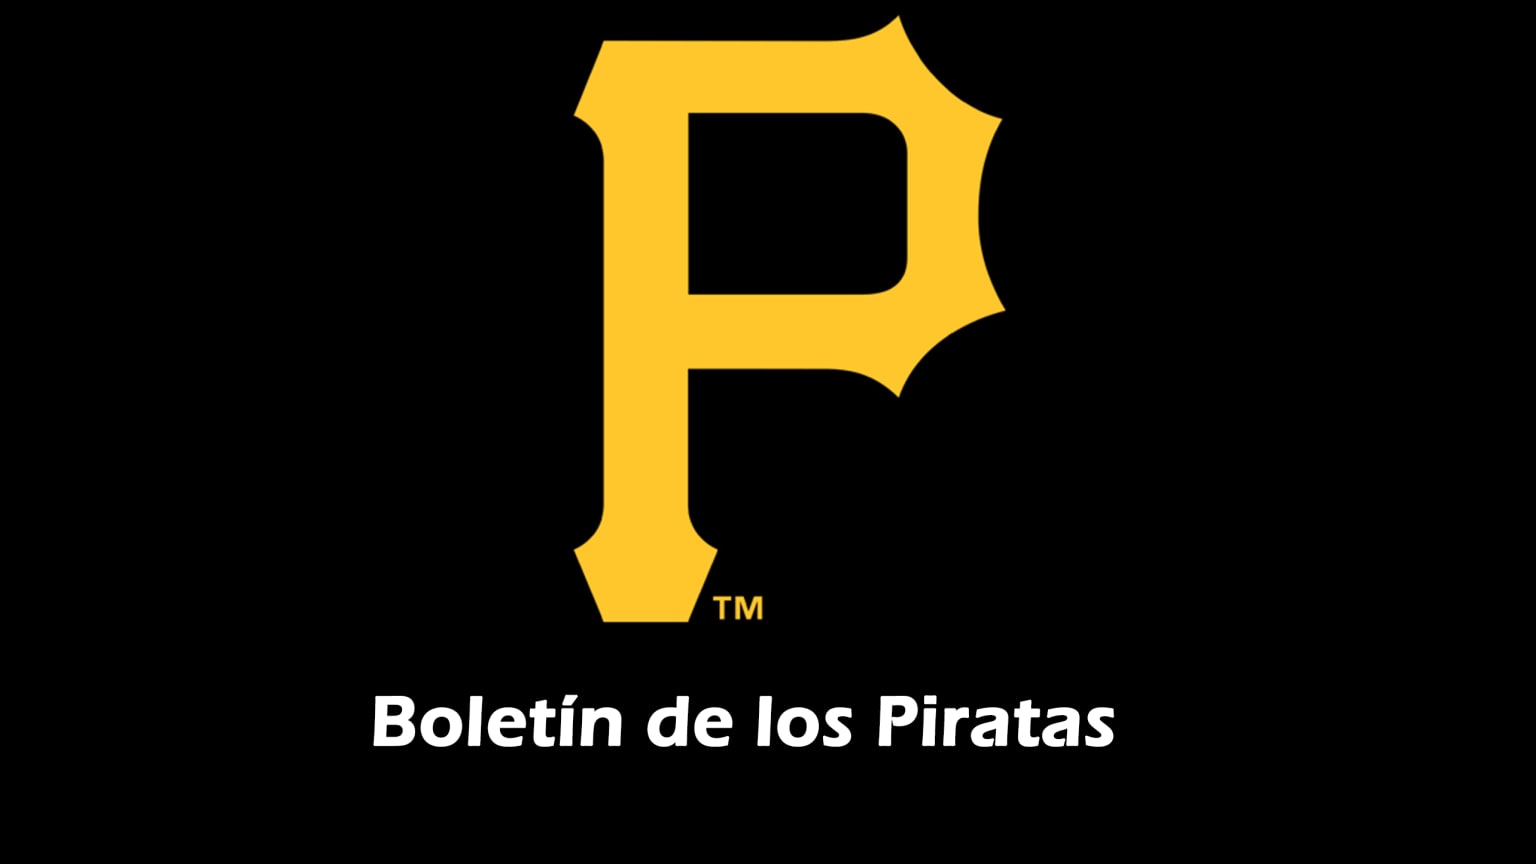 Equipo Pittsburgh Pirates oficial, Pirates camisetas, tienda, Pittsburgh  tienda profesional, ropa